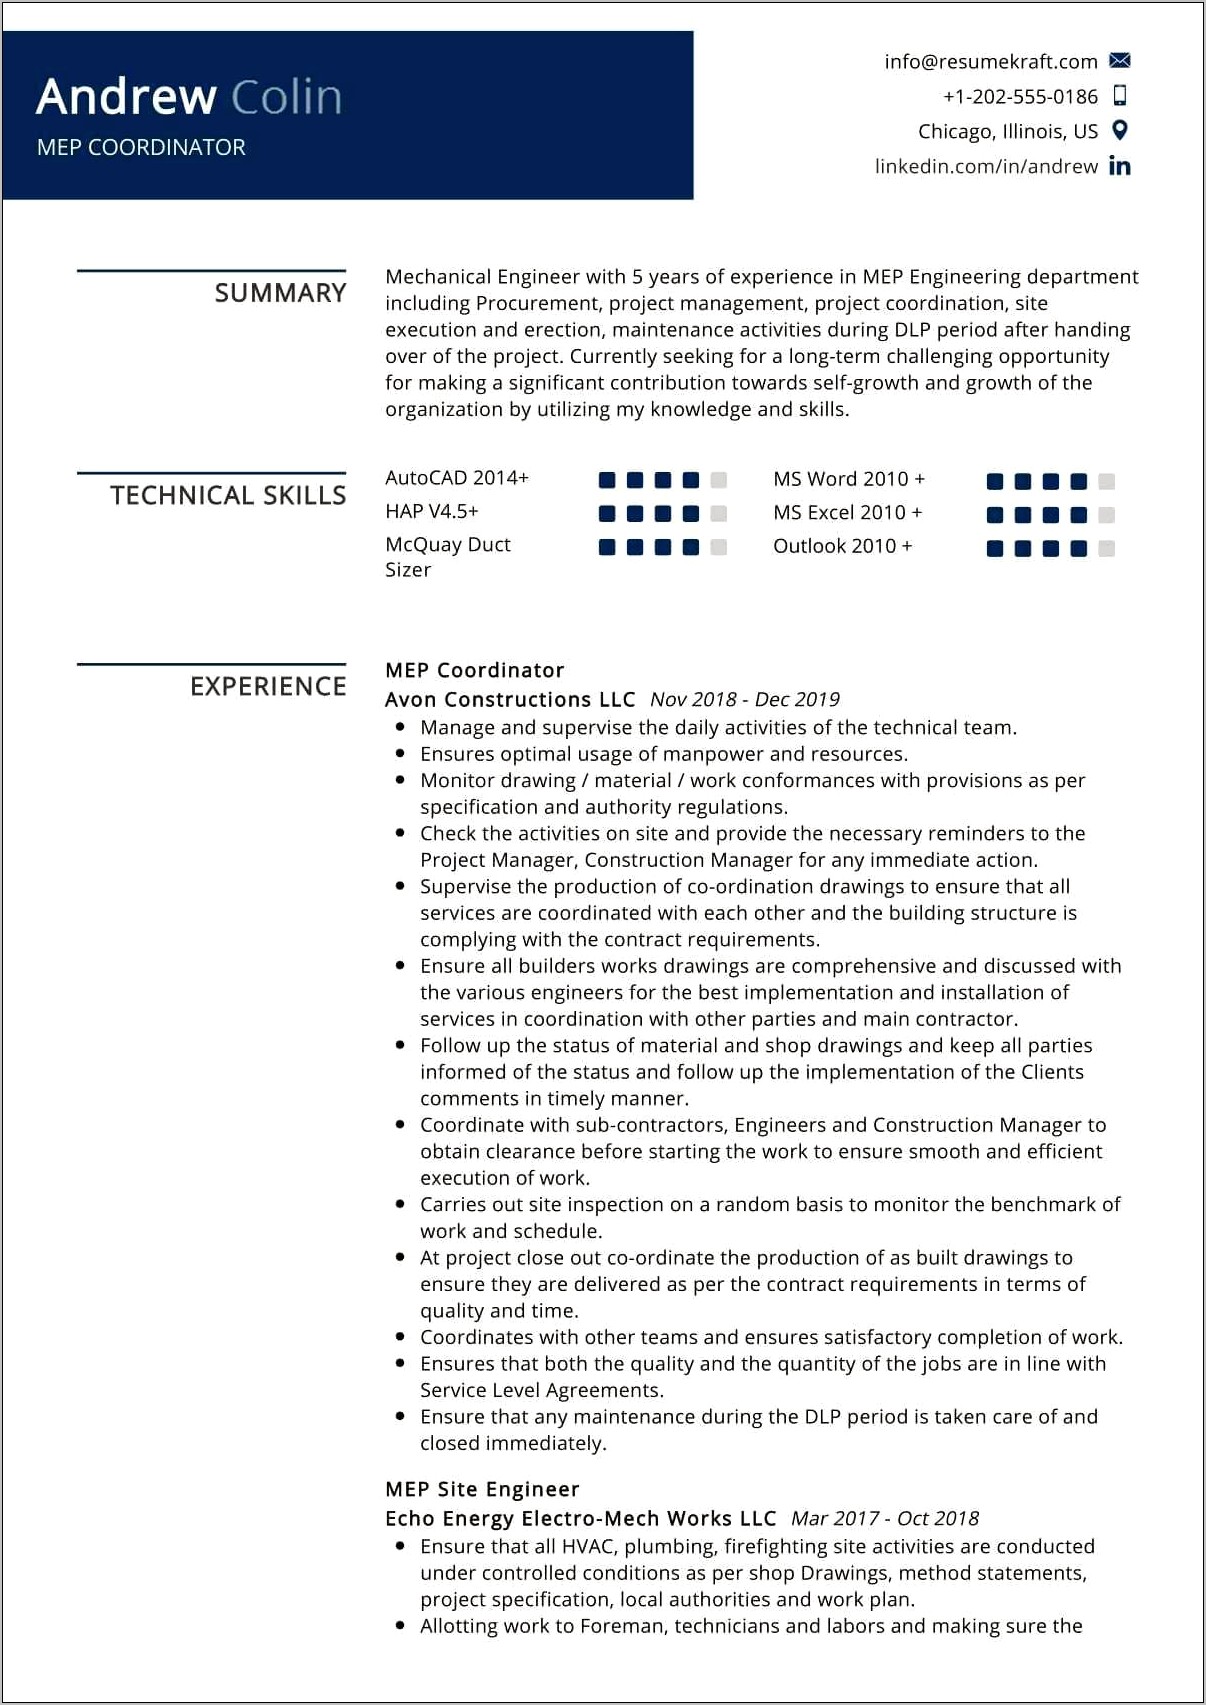 Resume Format For Coordinator Jobs